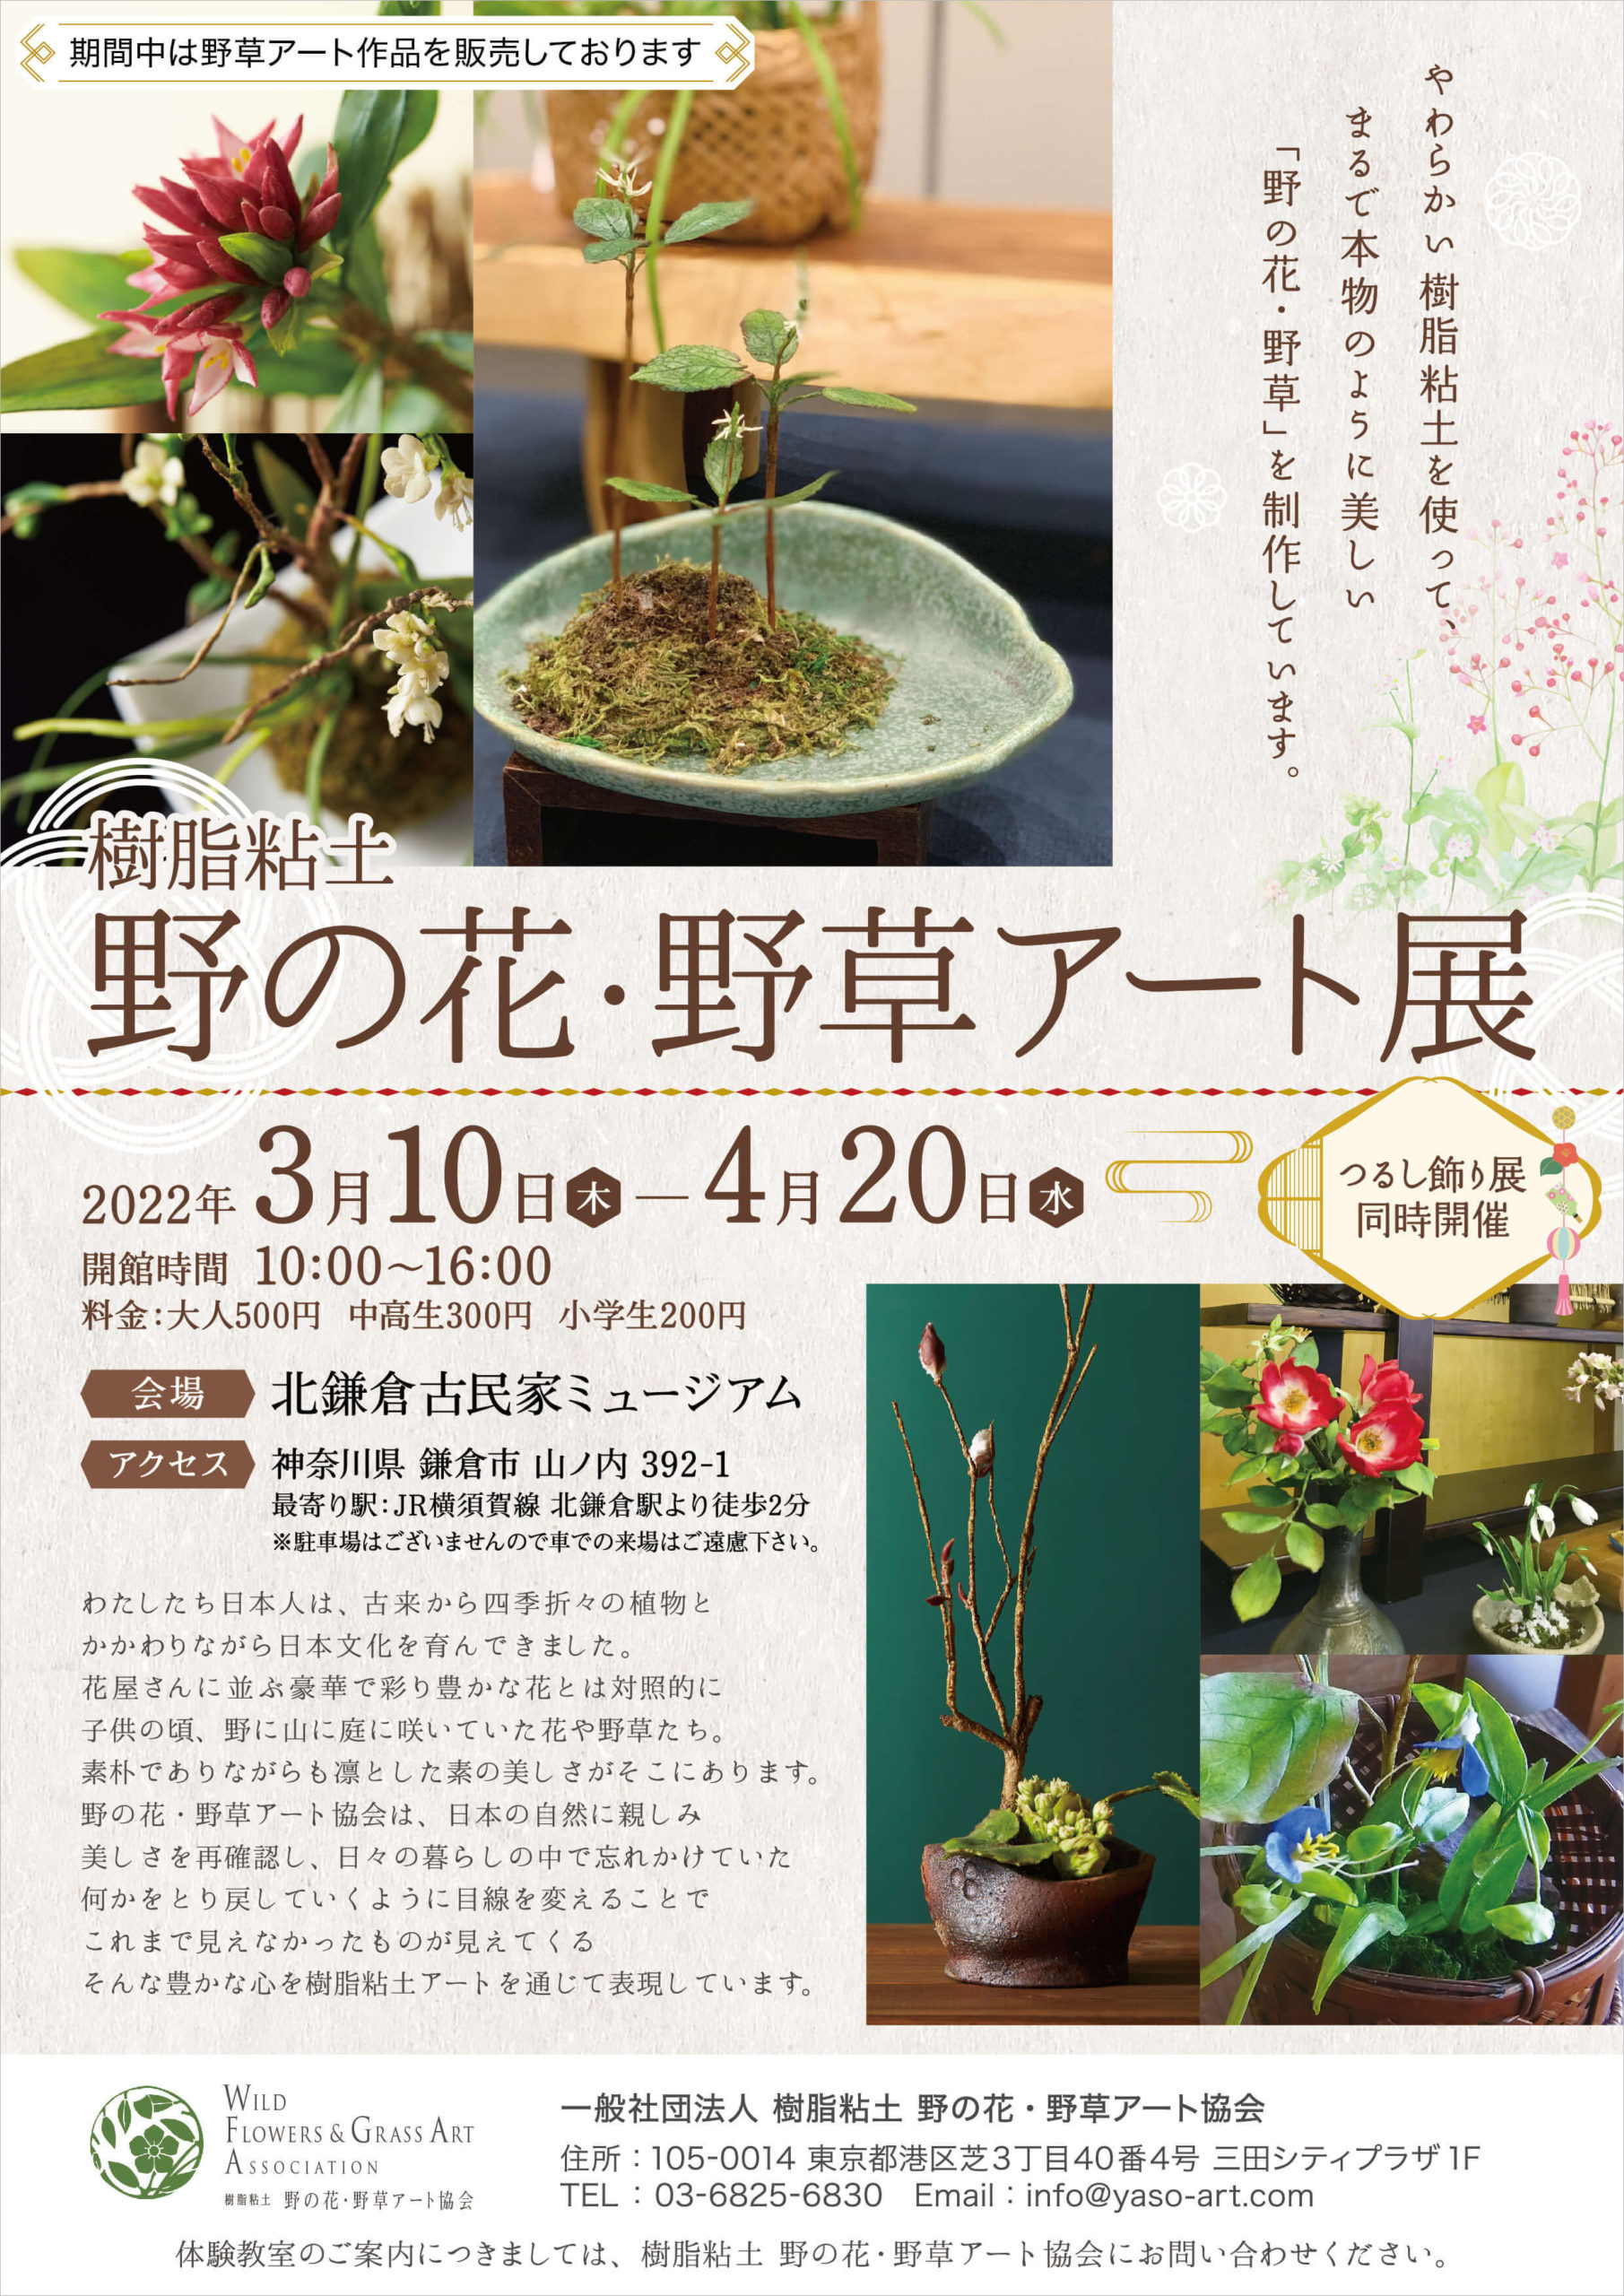 「樹脂粘土 野の花・野草アート展」北鎌倉古民家ミュージアムにて開催